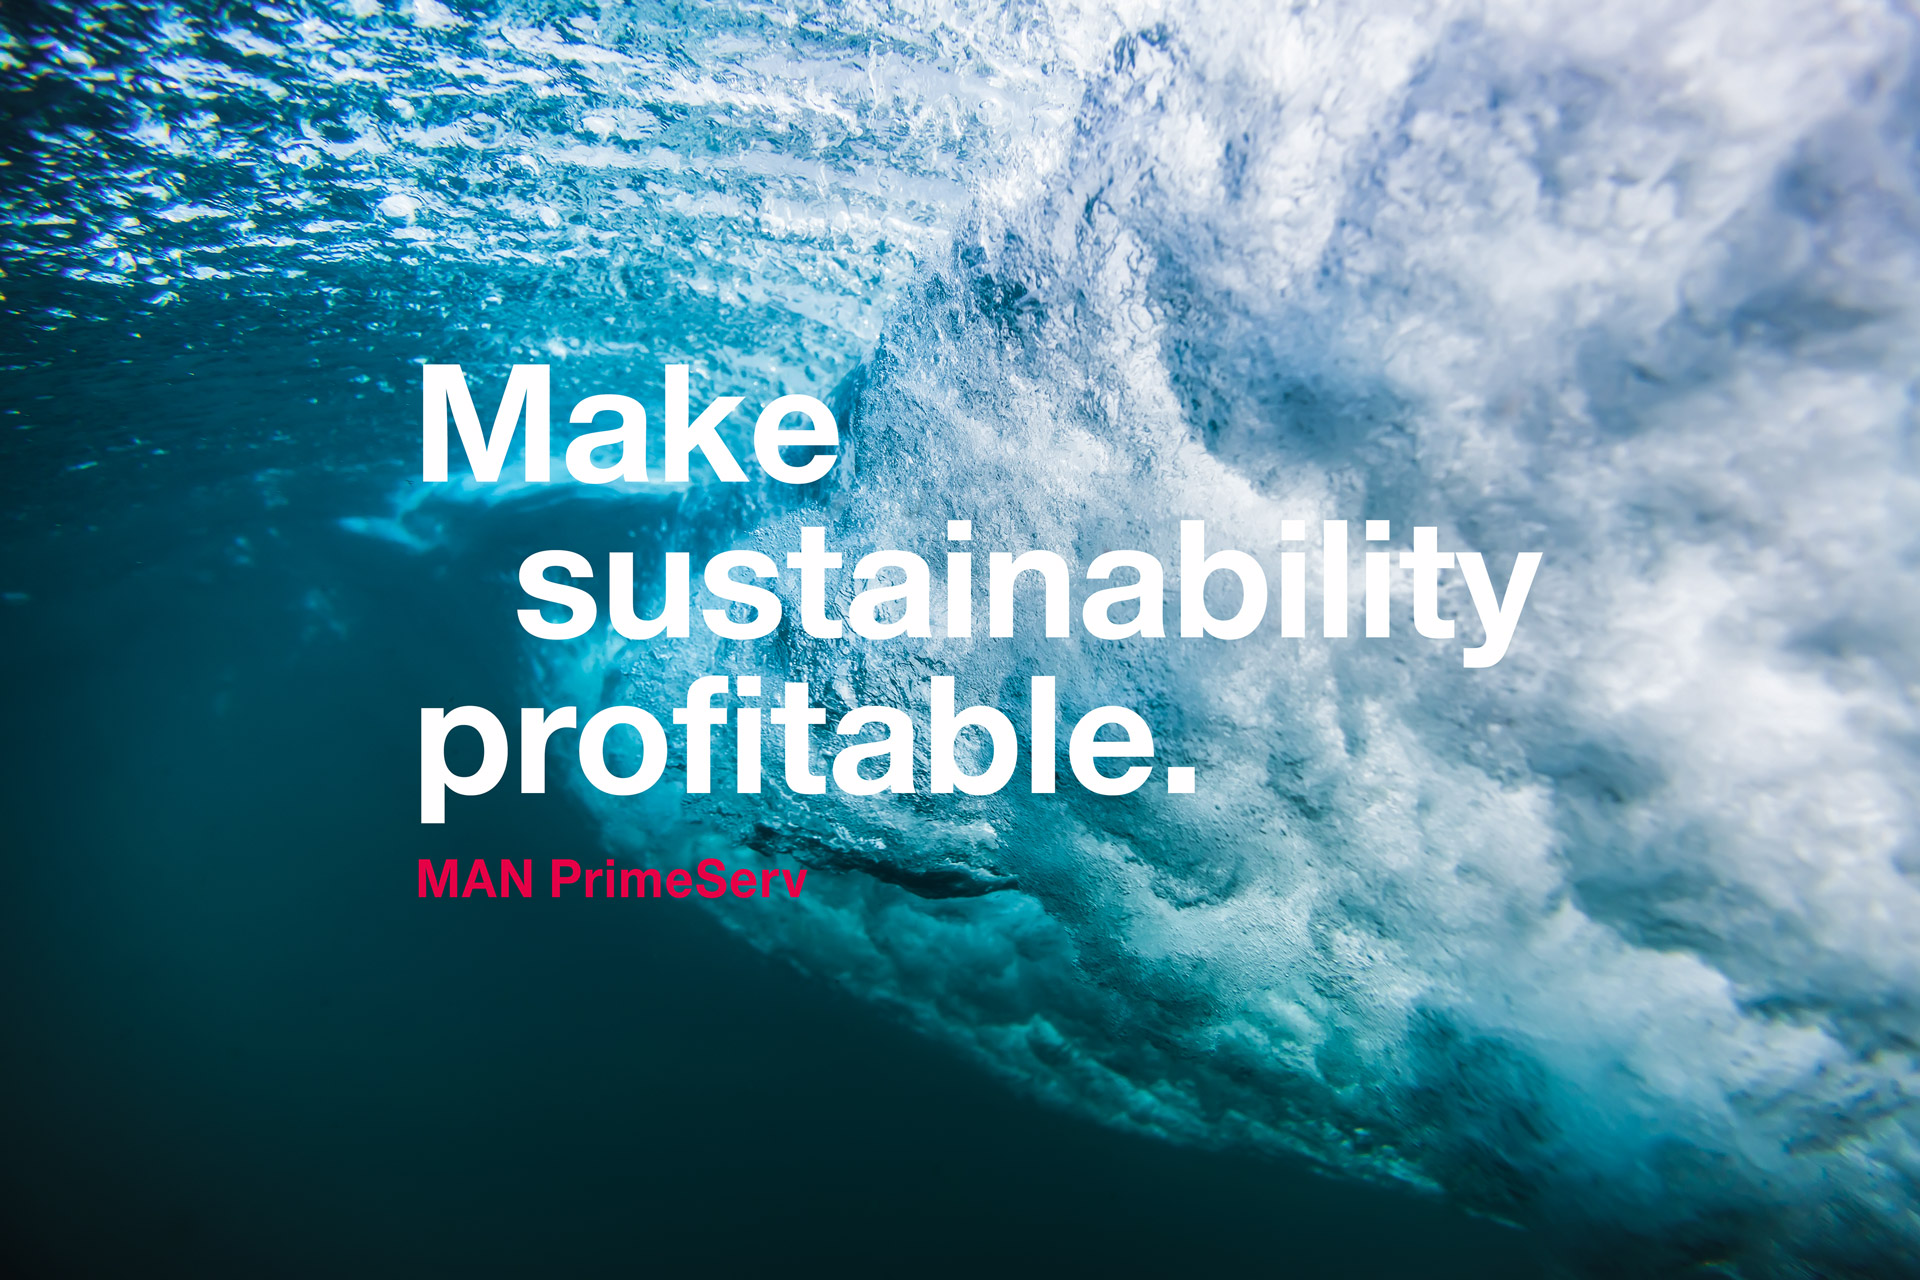 Ein Bild von einer Welle mit dem Slogan 'Make sustainability profitable' der MAN PrimeServ